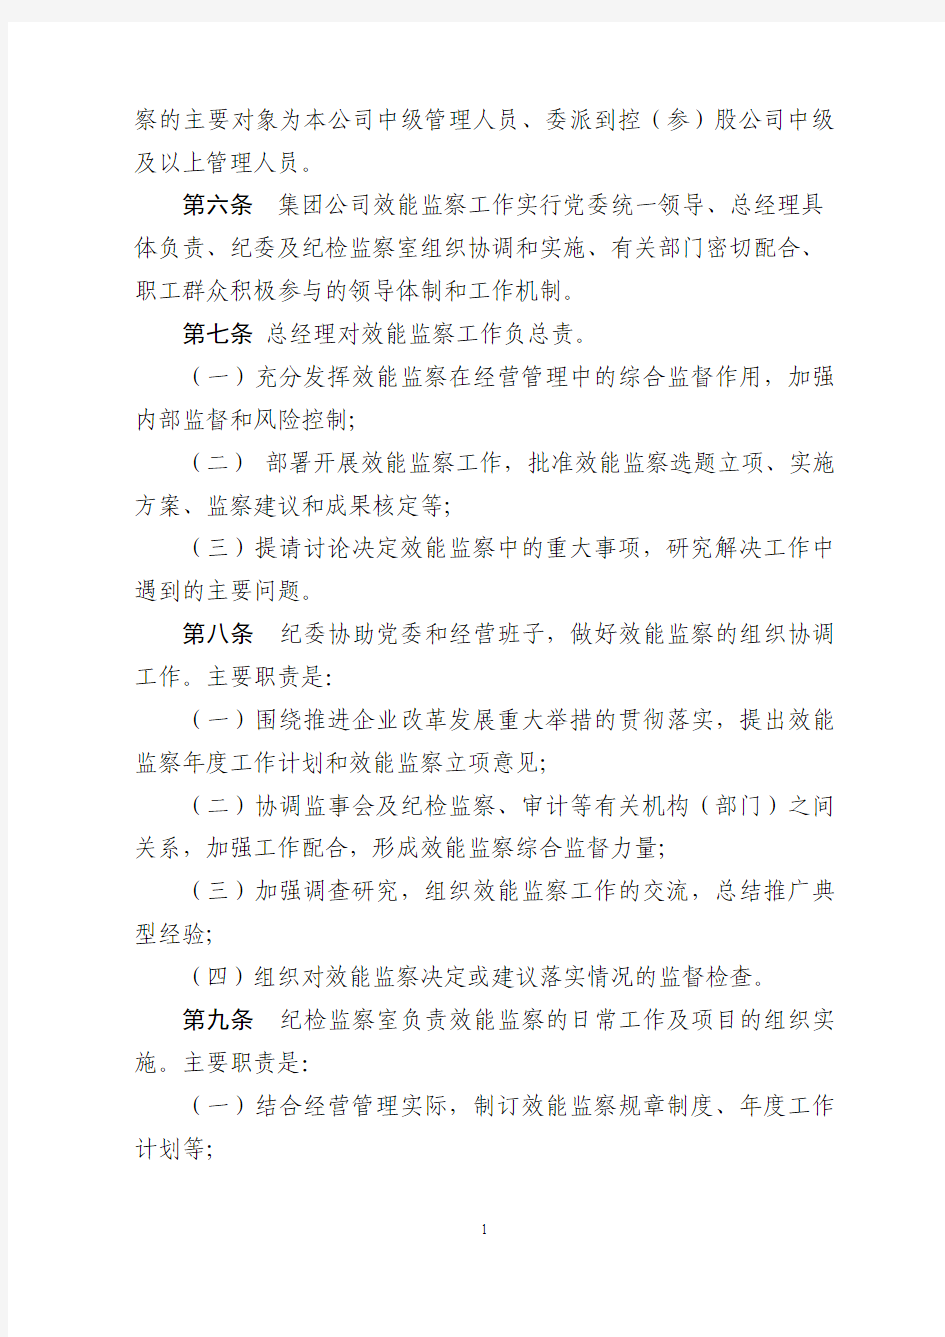 浙江省铁路投资集团有限公司效能监察实施细则